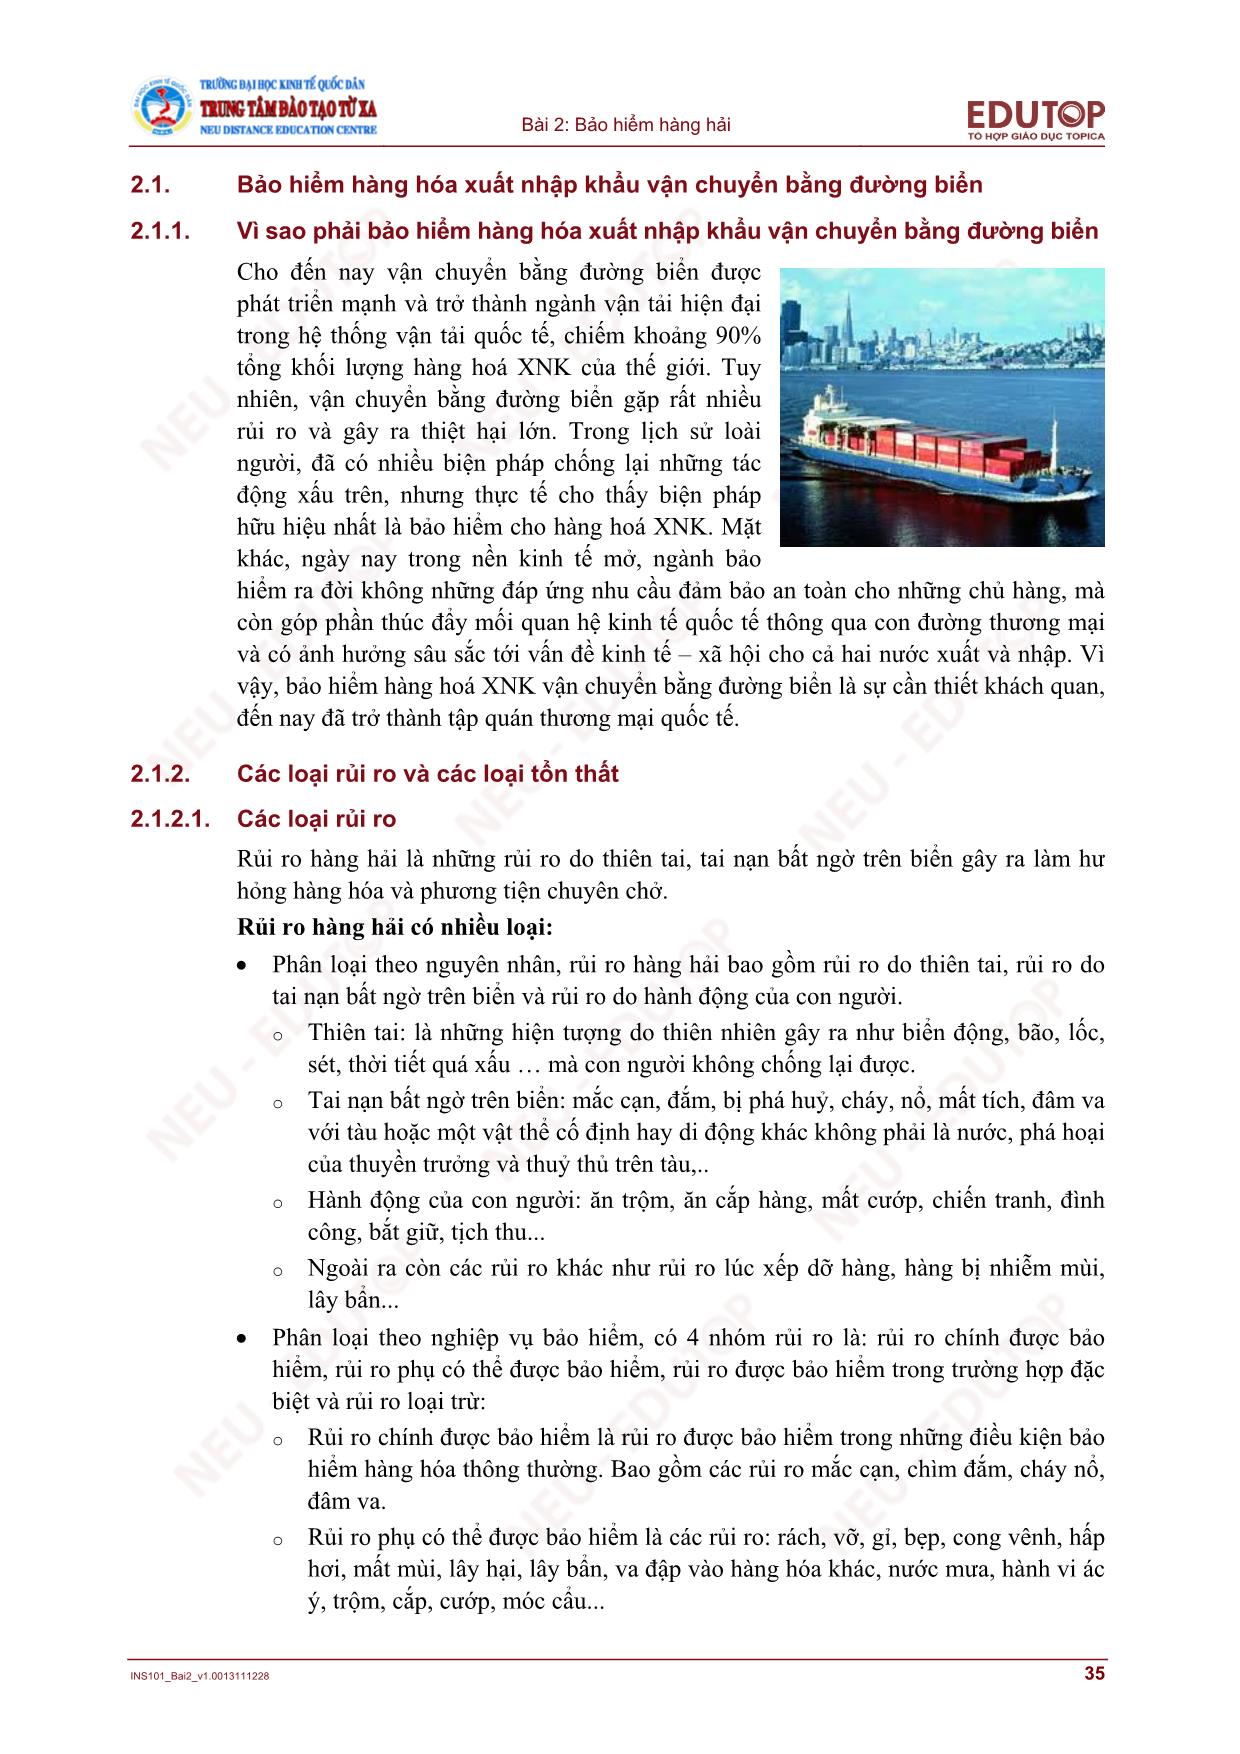 Bài giảng Bảo hiểm thương mại - Bài 2, Phần 2: Bảo hiểm hàng hải - Nguyễn Thị Lệ Huyền trang 3